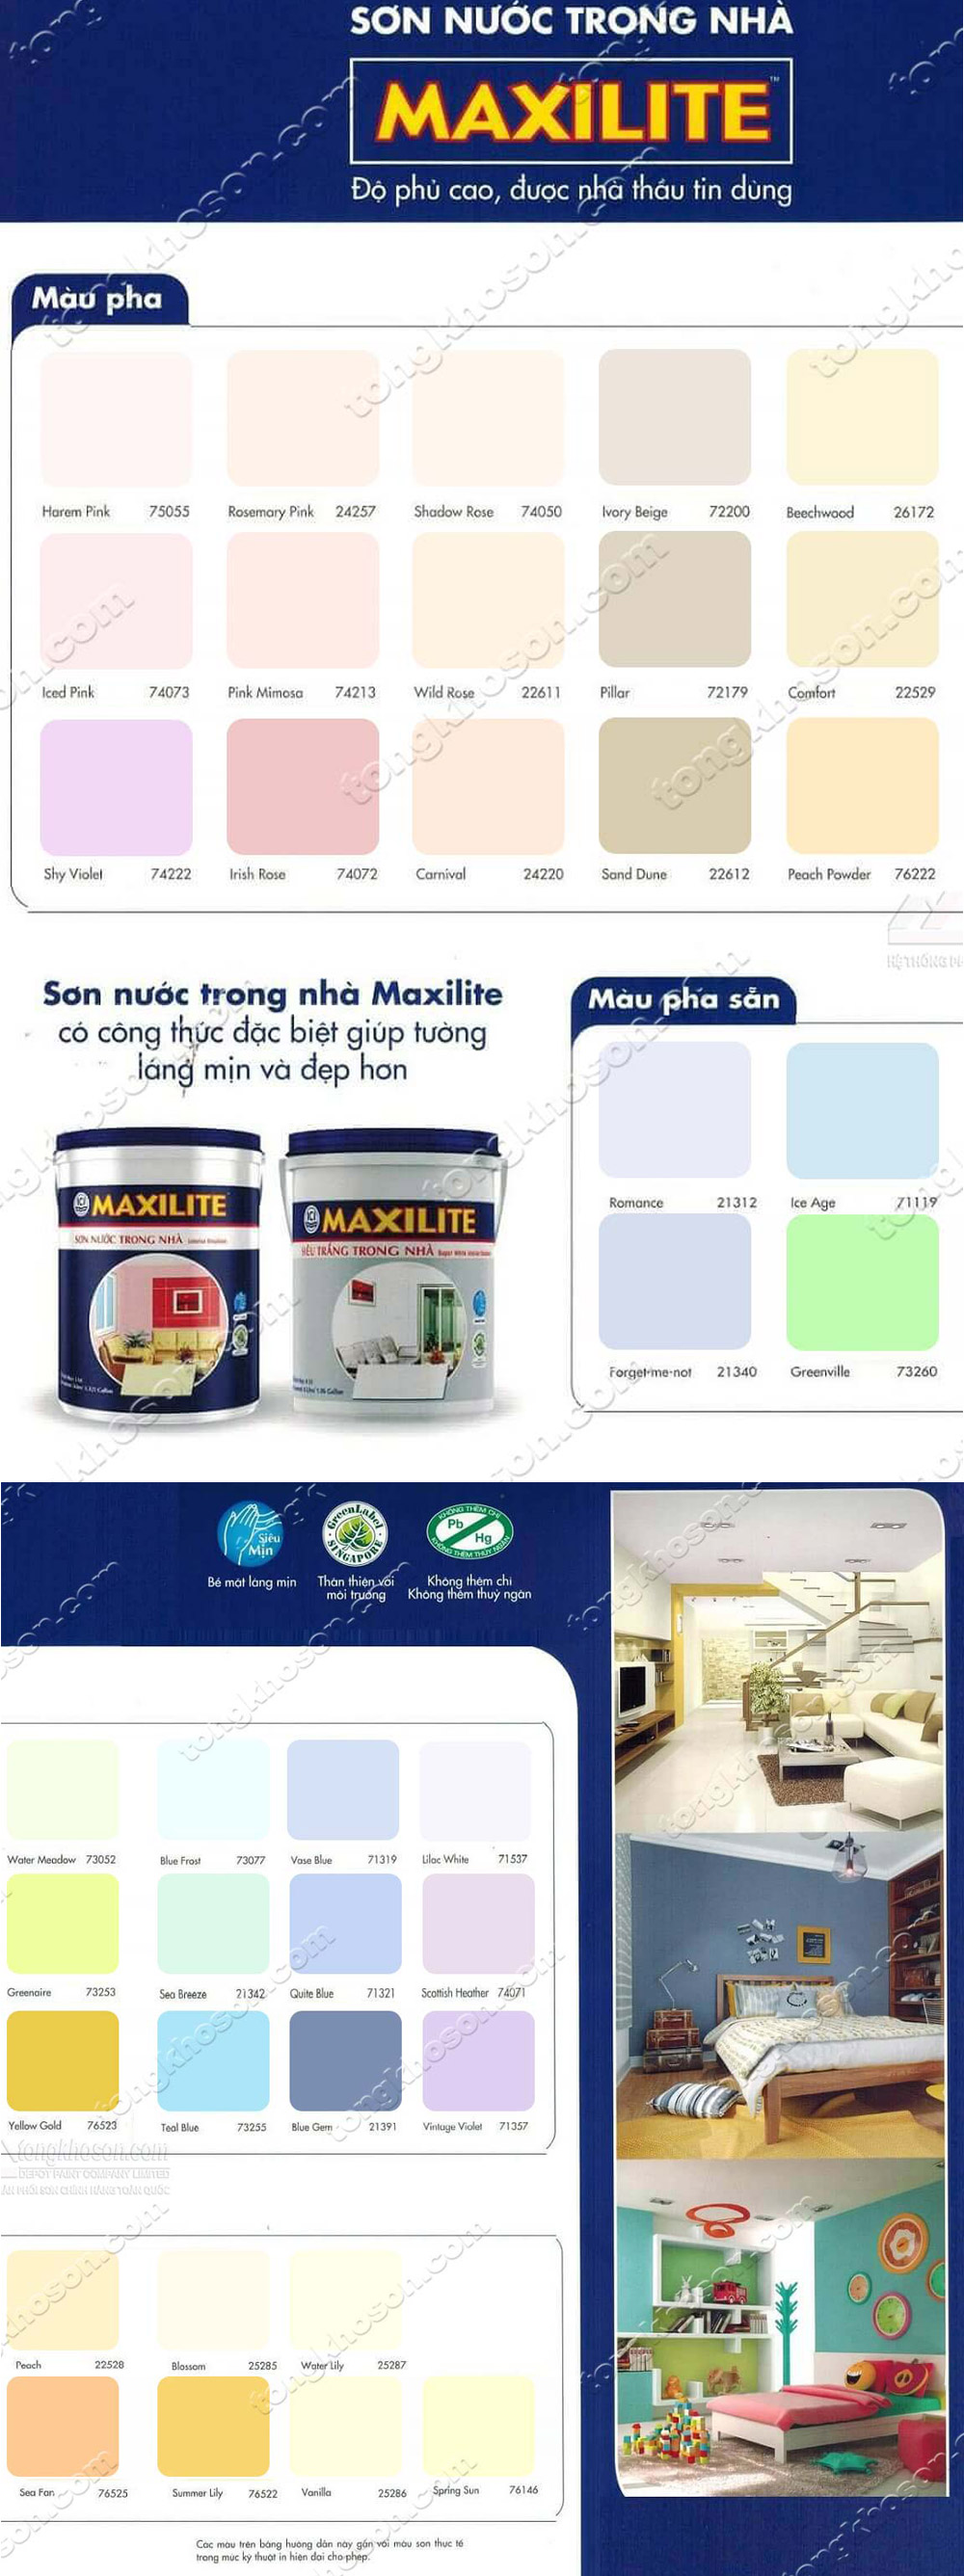 Bảng Màu Sơn Maxilite Trong Nhà | Tongkhoson.Com